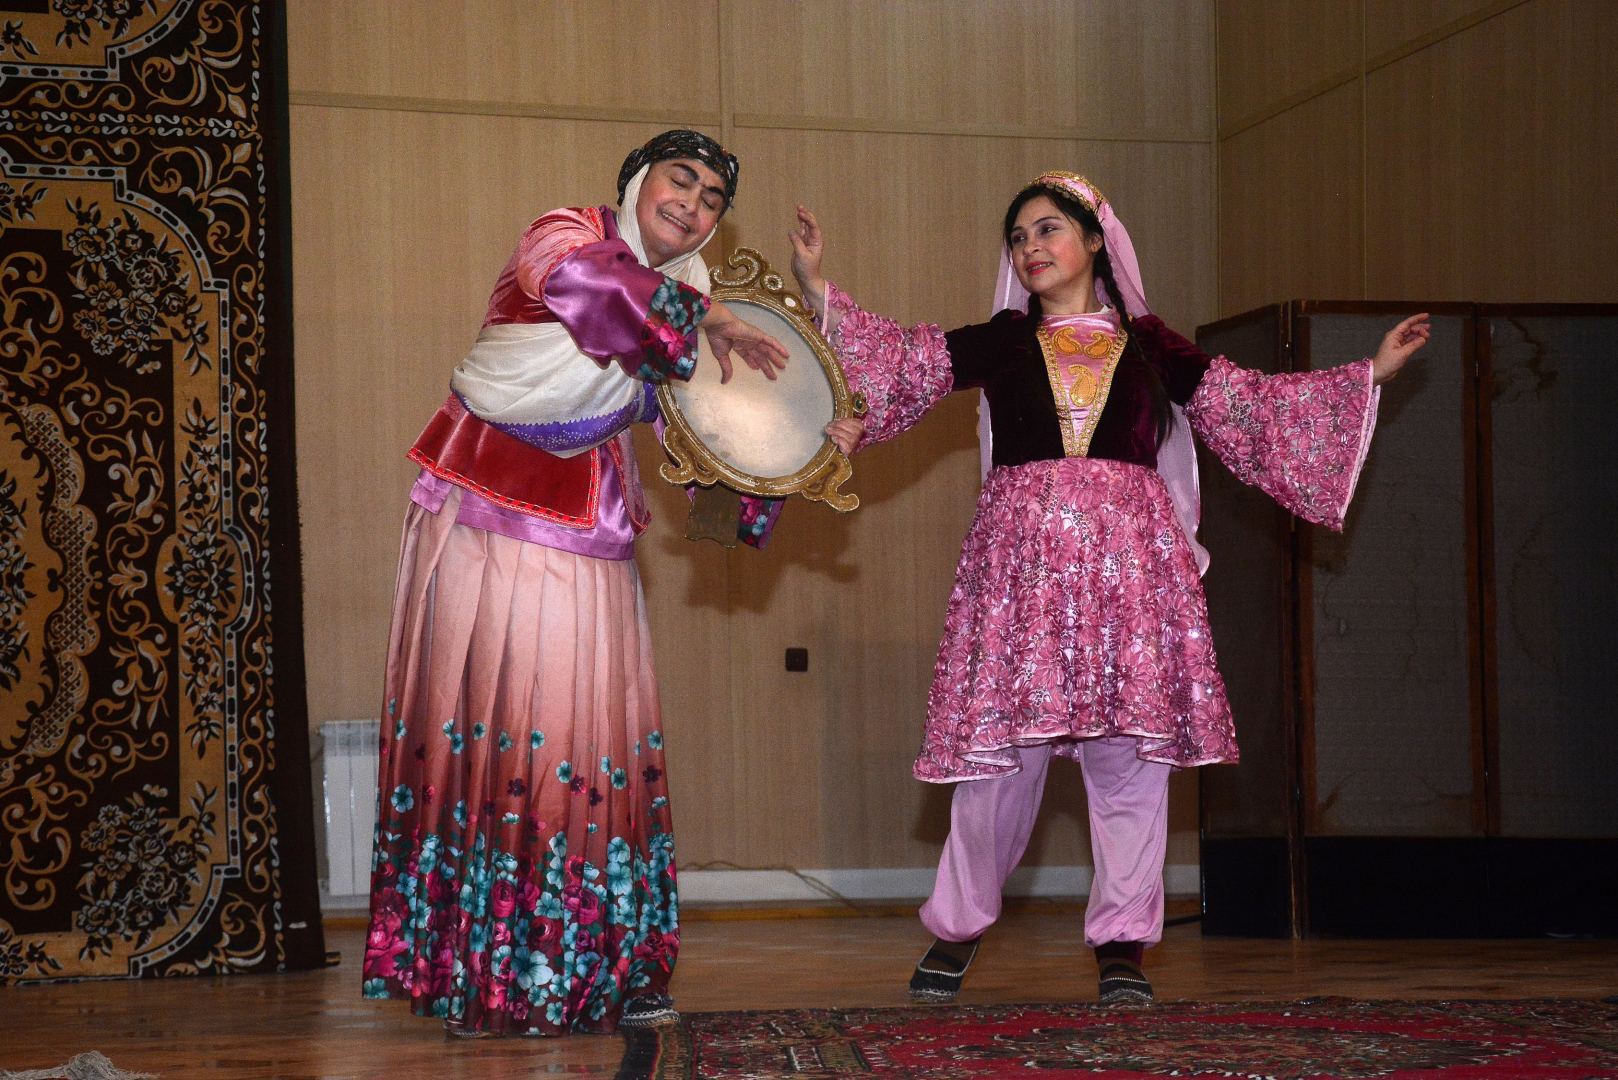 Актеры азербайджанского театра выступили в N-ской воинской части (ФОТО)